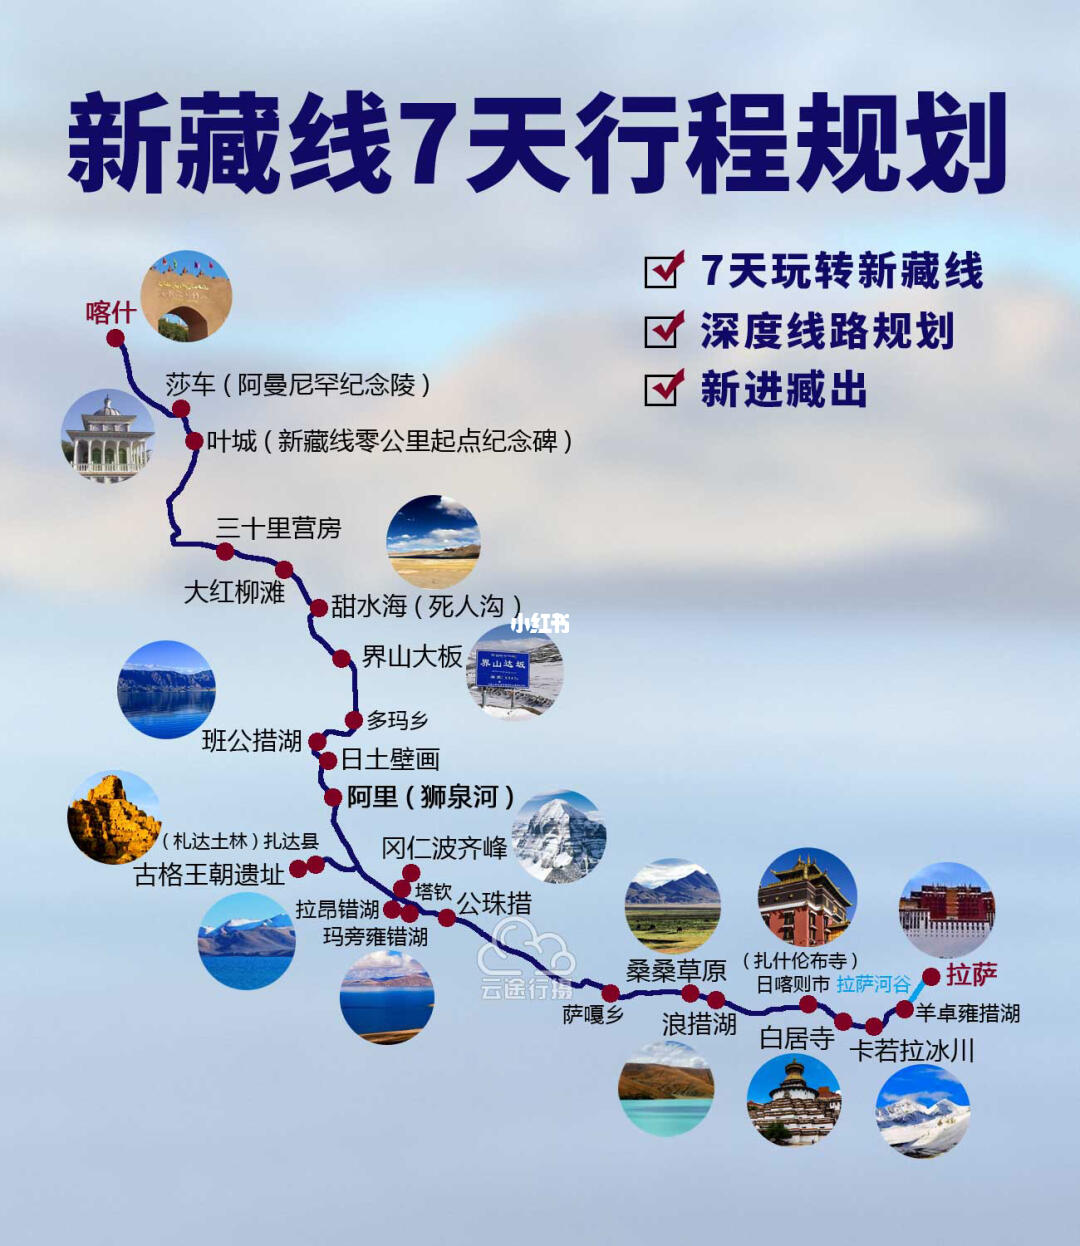 临沂到靖江自驾游攻略：路线规划、费用预算和旅游景点推荐